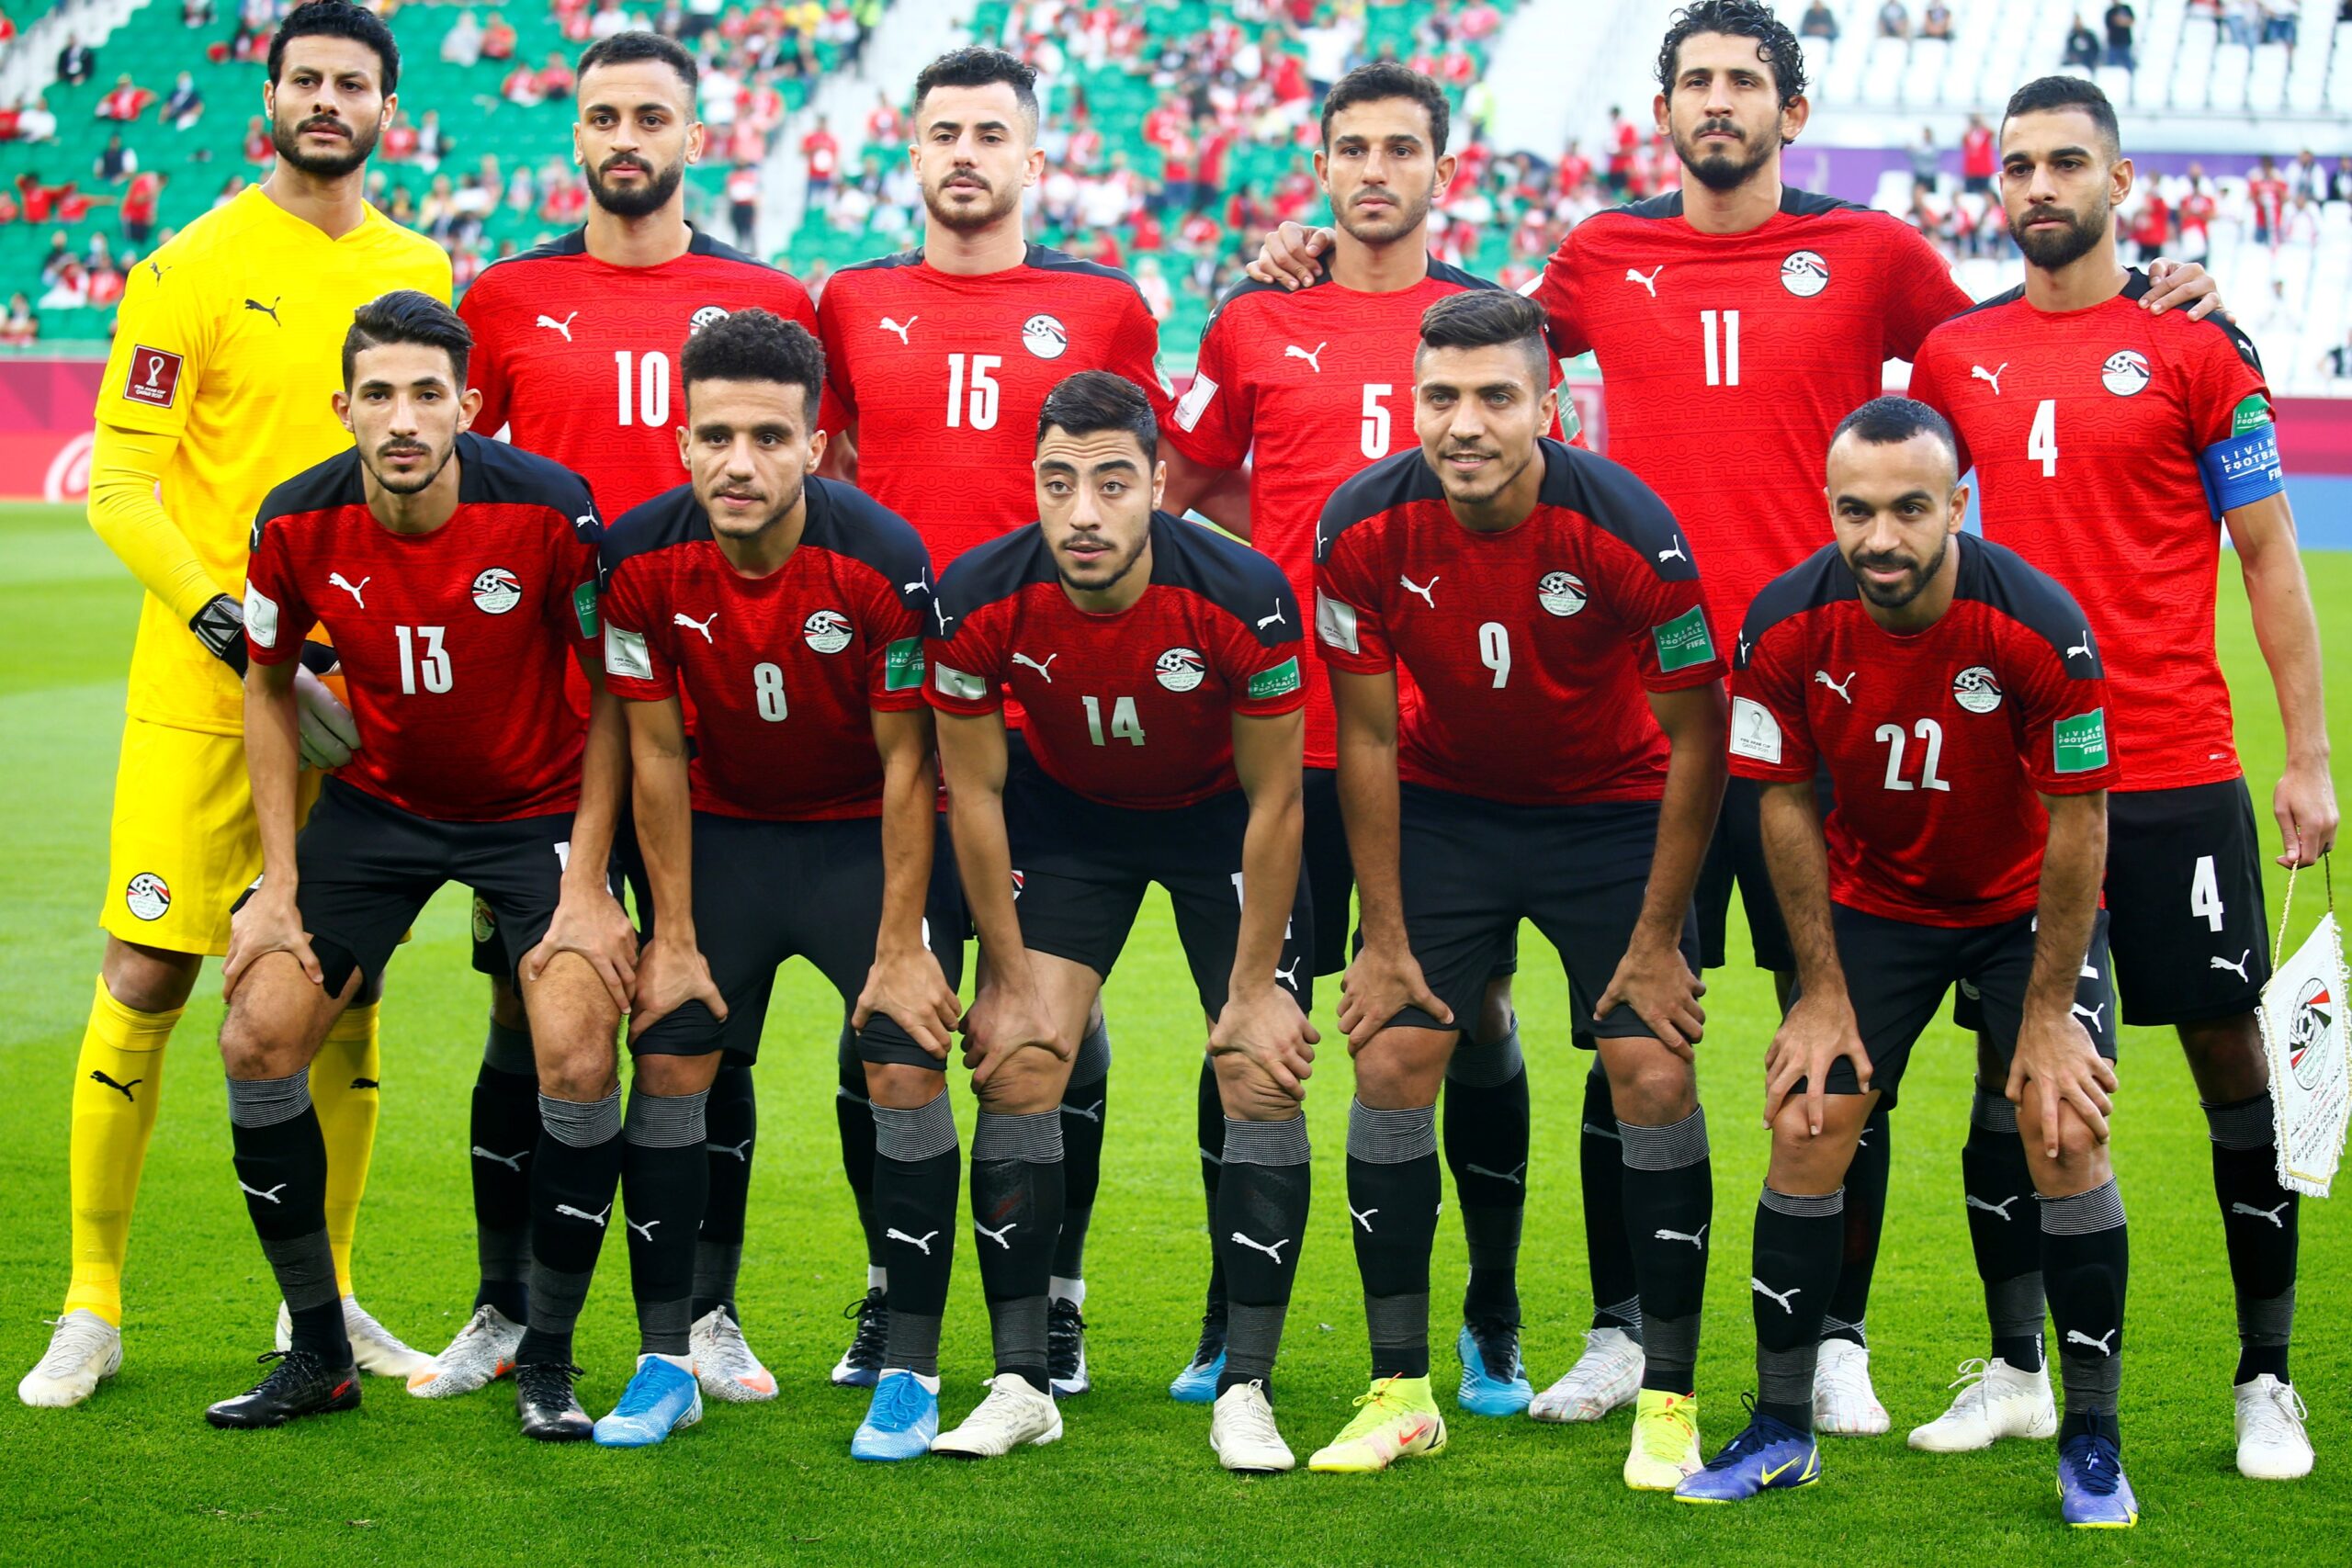 تعديل موعد مباراة مصر وقطر في كأس العرب 20211 لتحديد المركزين الثالث والرابع والقنوات الناقلة لها